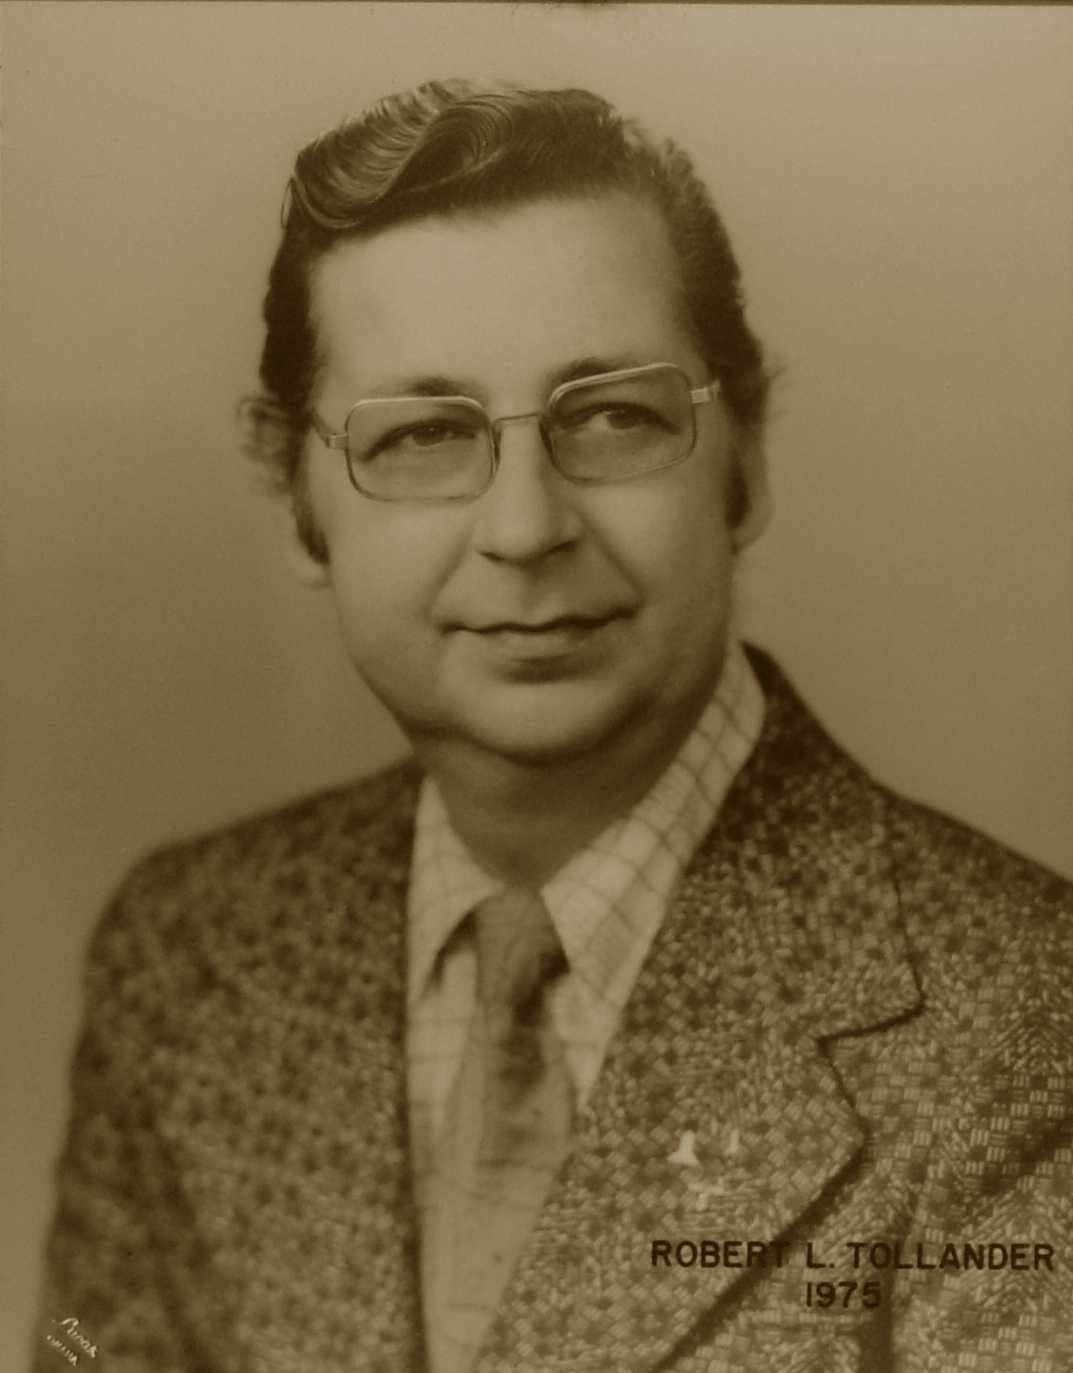 Robert L. Tollander, 1975